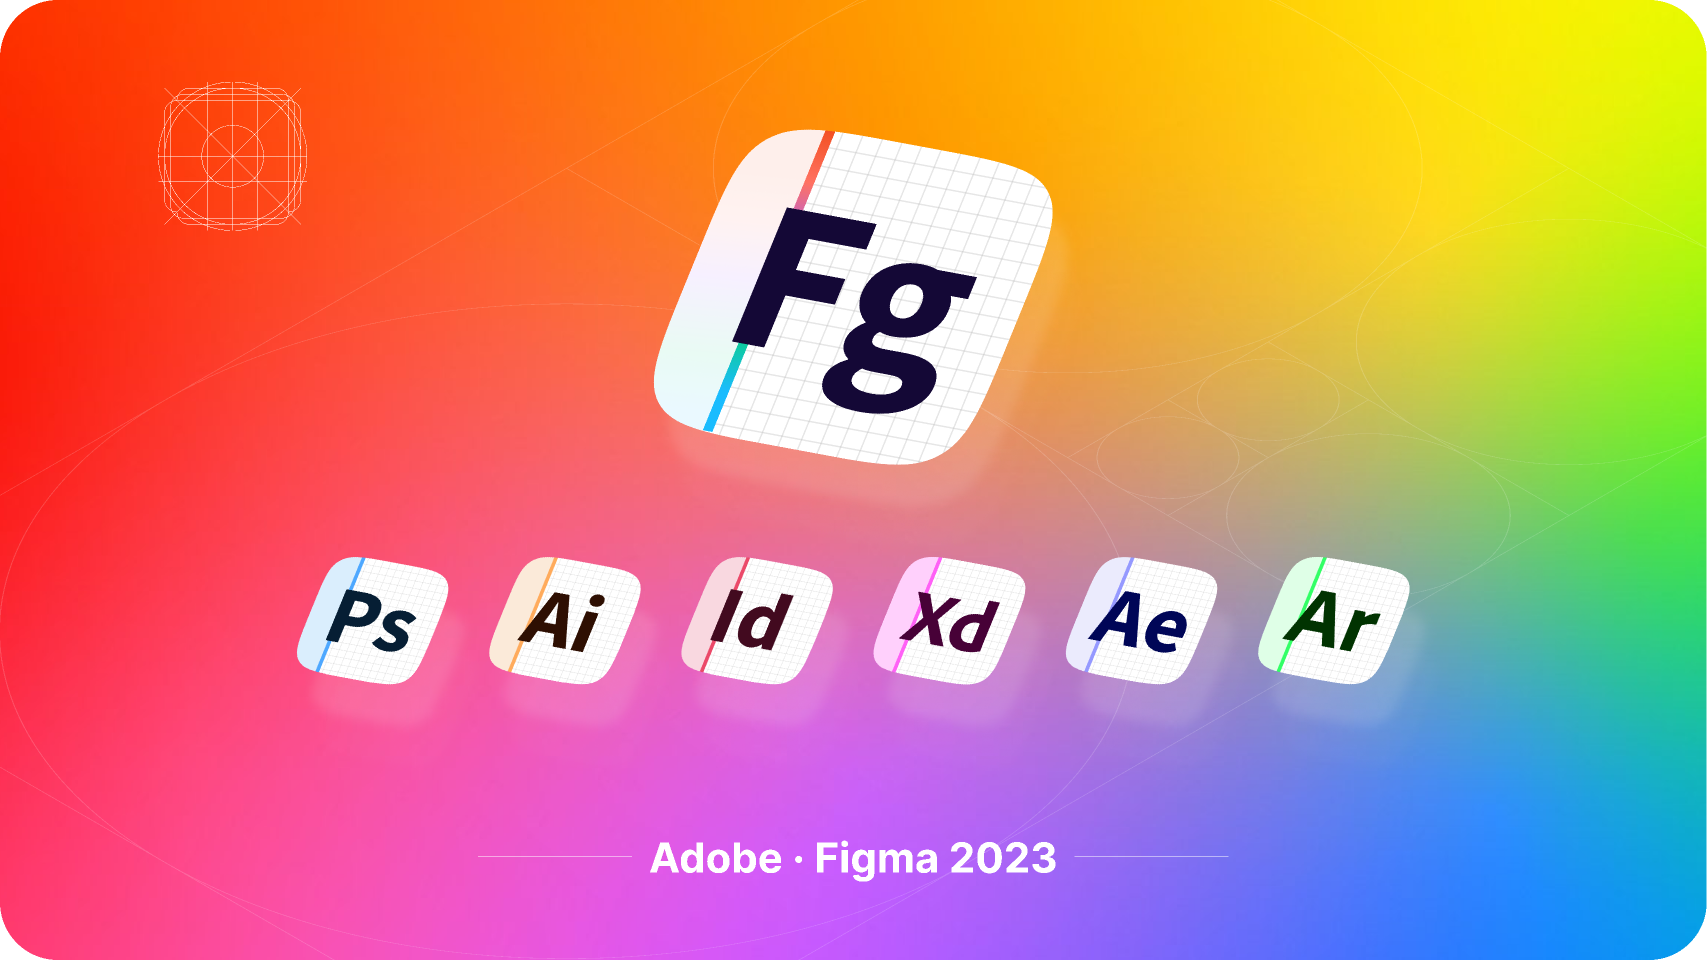 Figma já era anunciado com um dos softwares da Adobe